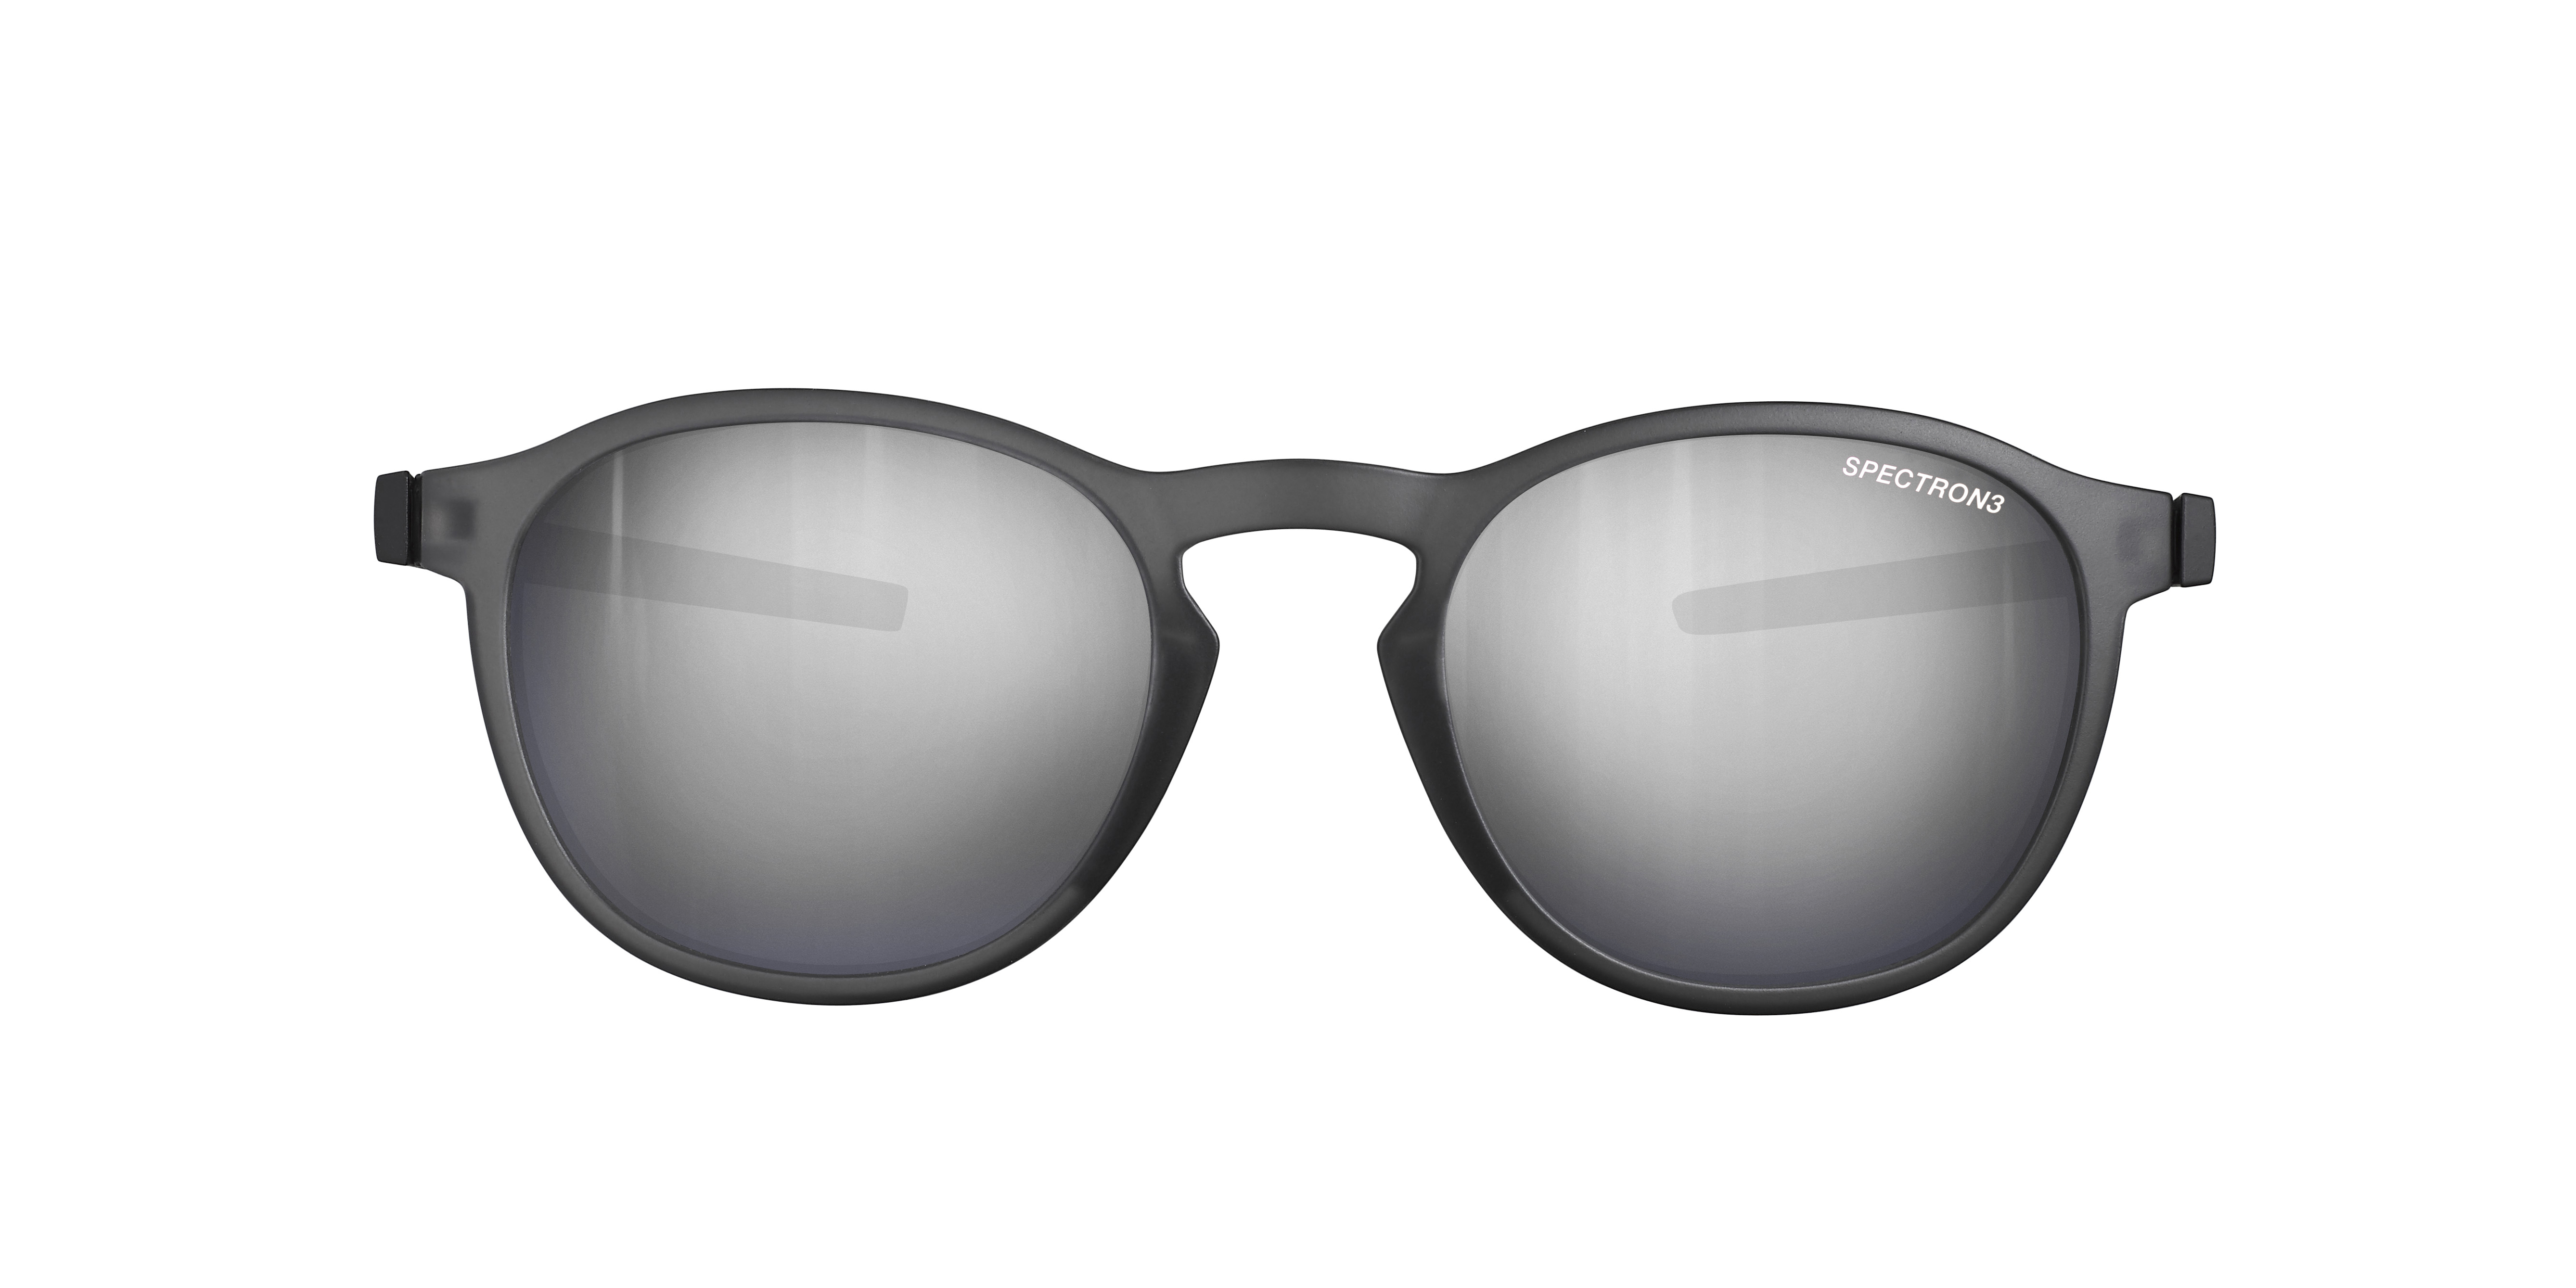 Sunglasses Julbo Js565 shine, black colour - Doyle